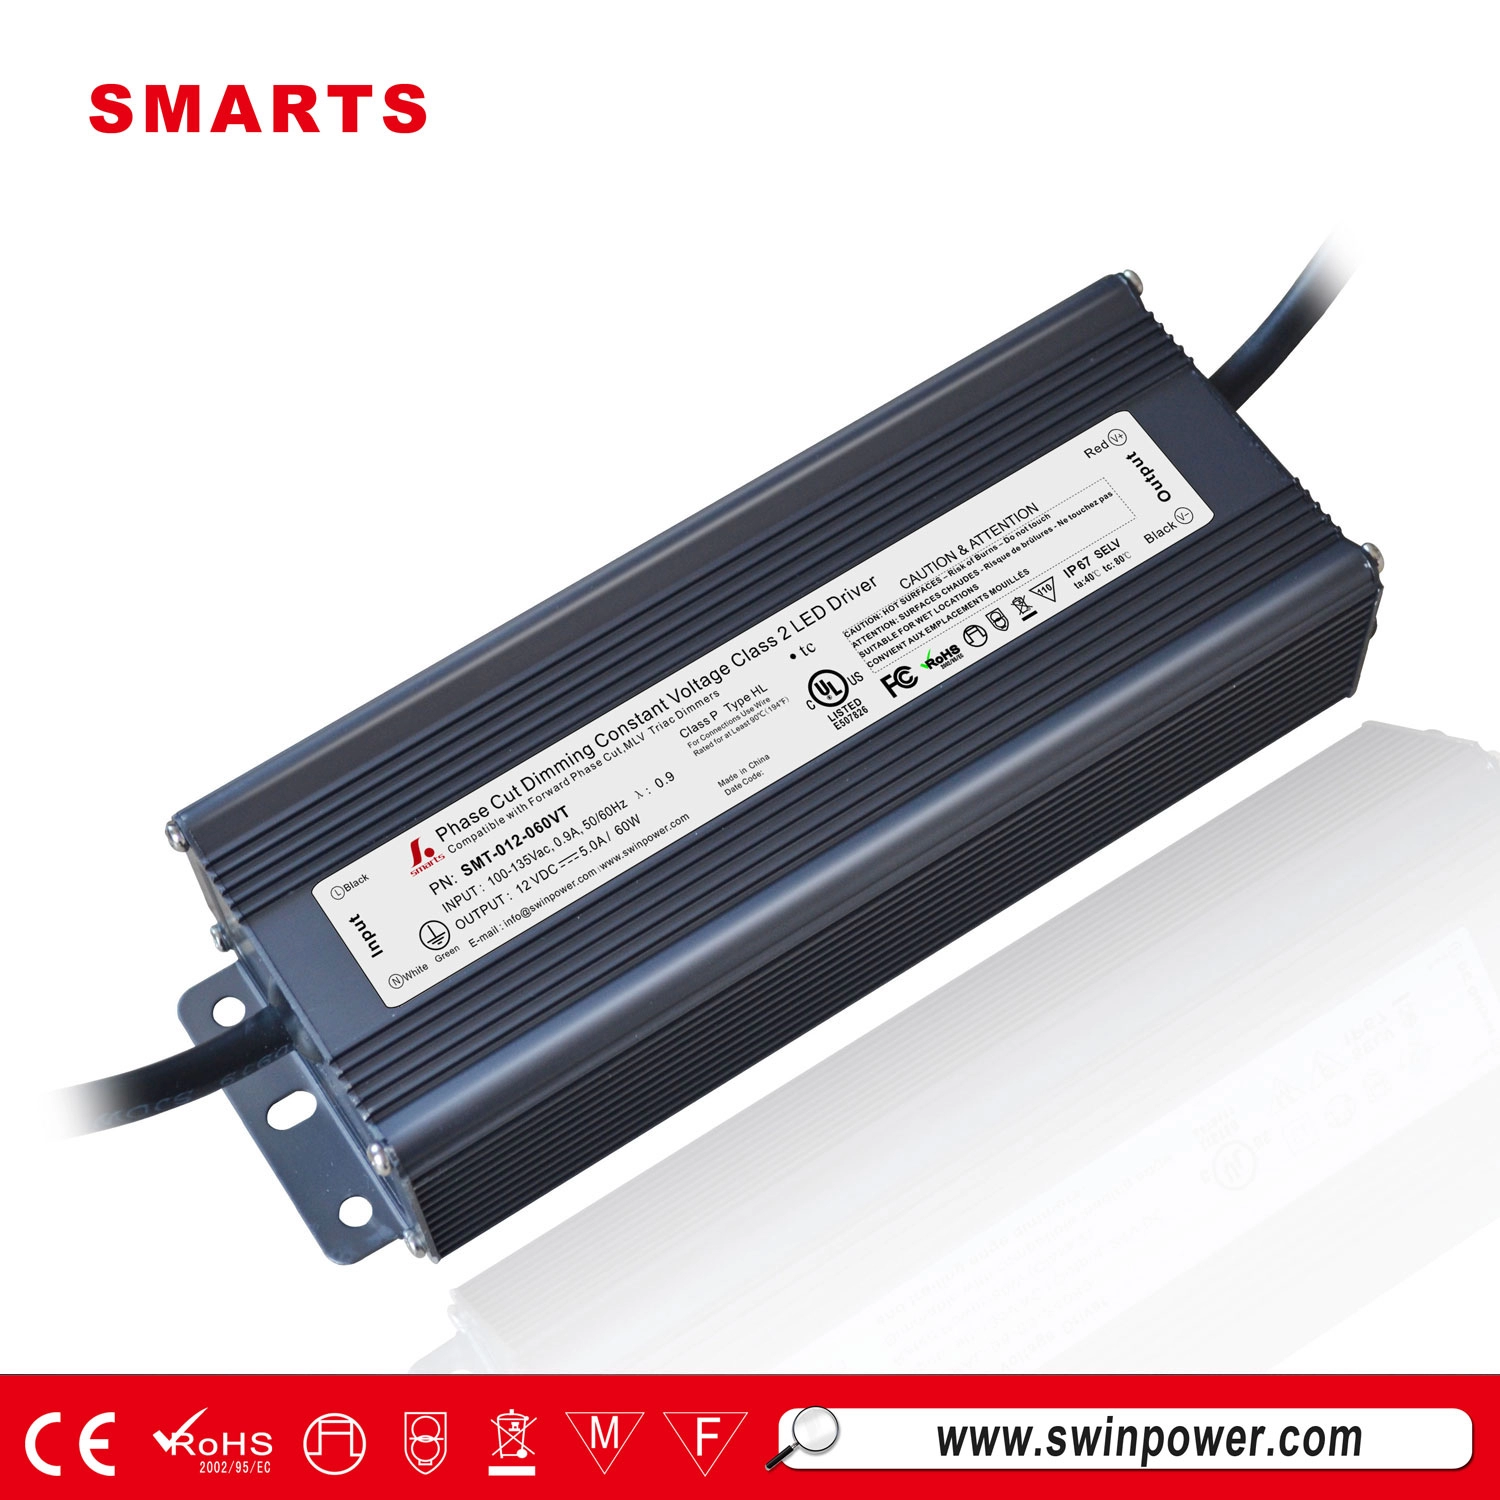 LED panel ışık sürücüsü 12v 60w triyak kısılabilir sabit voltajlı led güç kaynağı